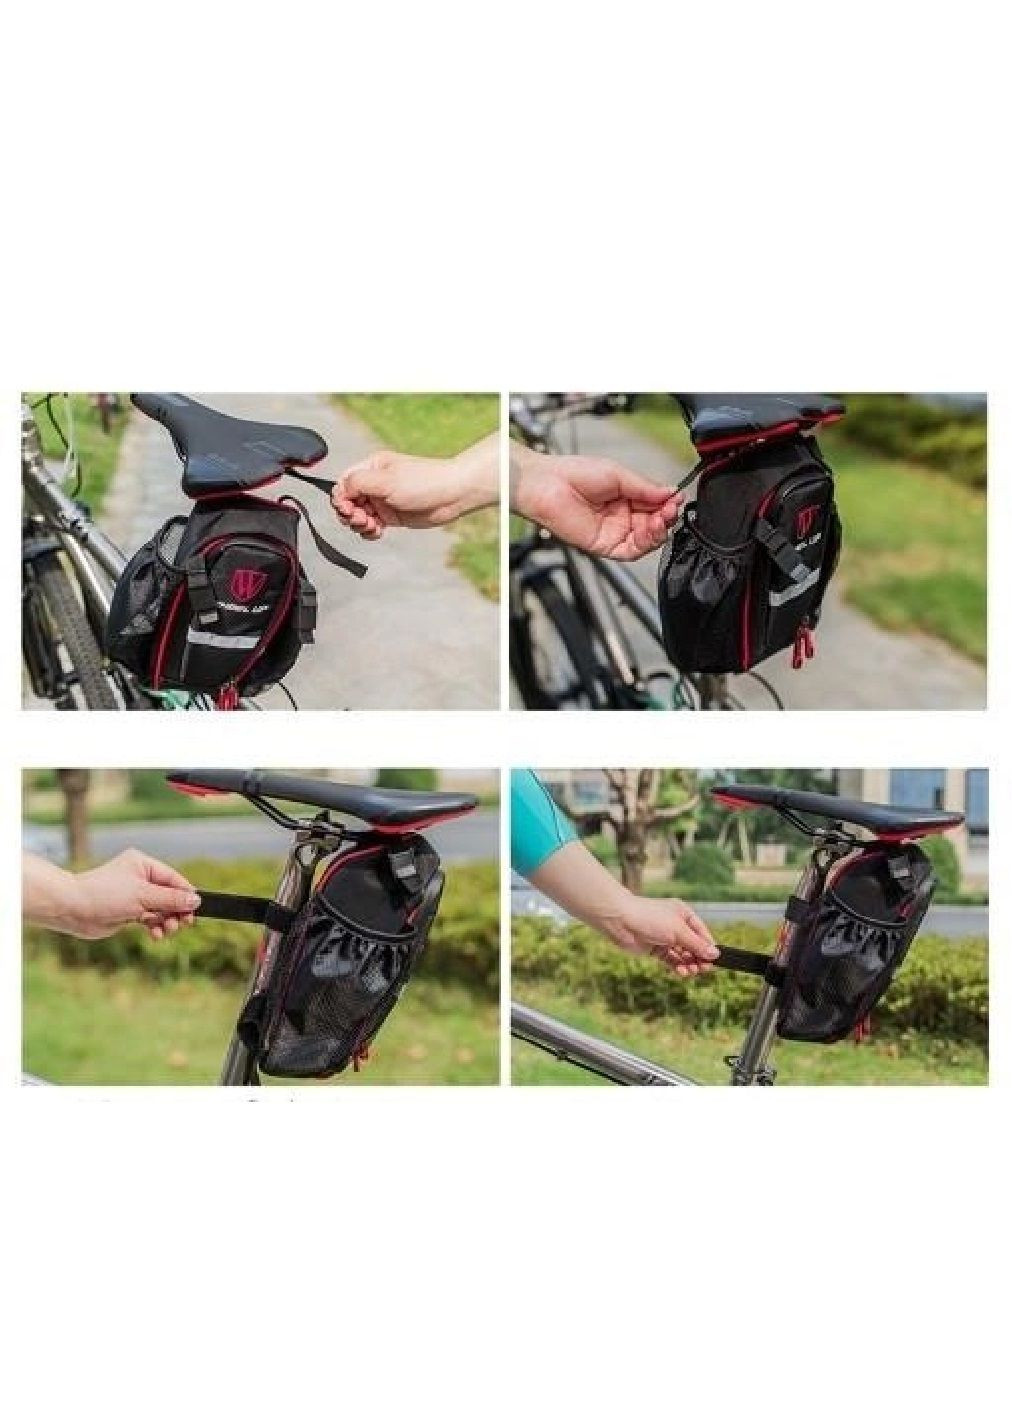 Велосумка сумка бардачок водонепроницаемая на велосипед с карманами для бутылок 26*8,8 см (476374-Prob) Черная с серым Unbranded (280227032)